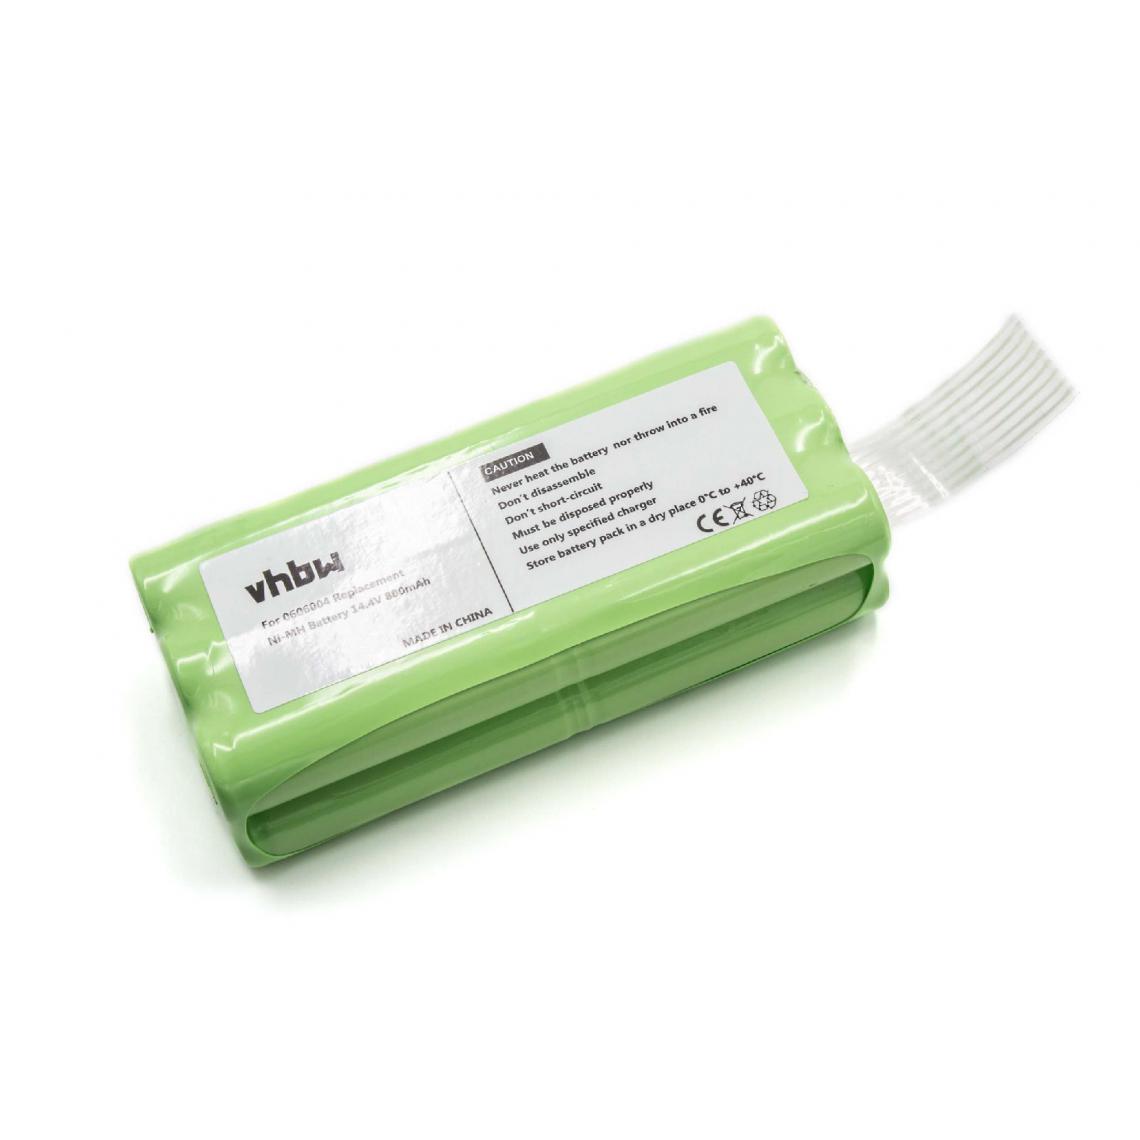 Vhbw - vhbw Batterie compatible avec Midea R1-L051B aspirateur, robot électroménager (800mAh, 14,4V, NiMH) - Remplacement pour 0606004, NC5755-944 - Accessoire entretien des sols